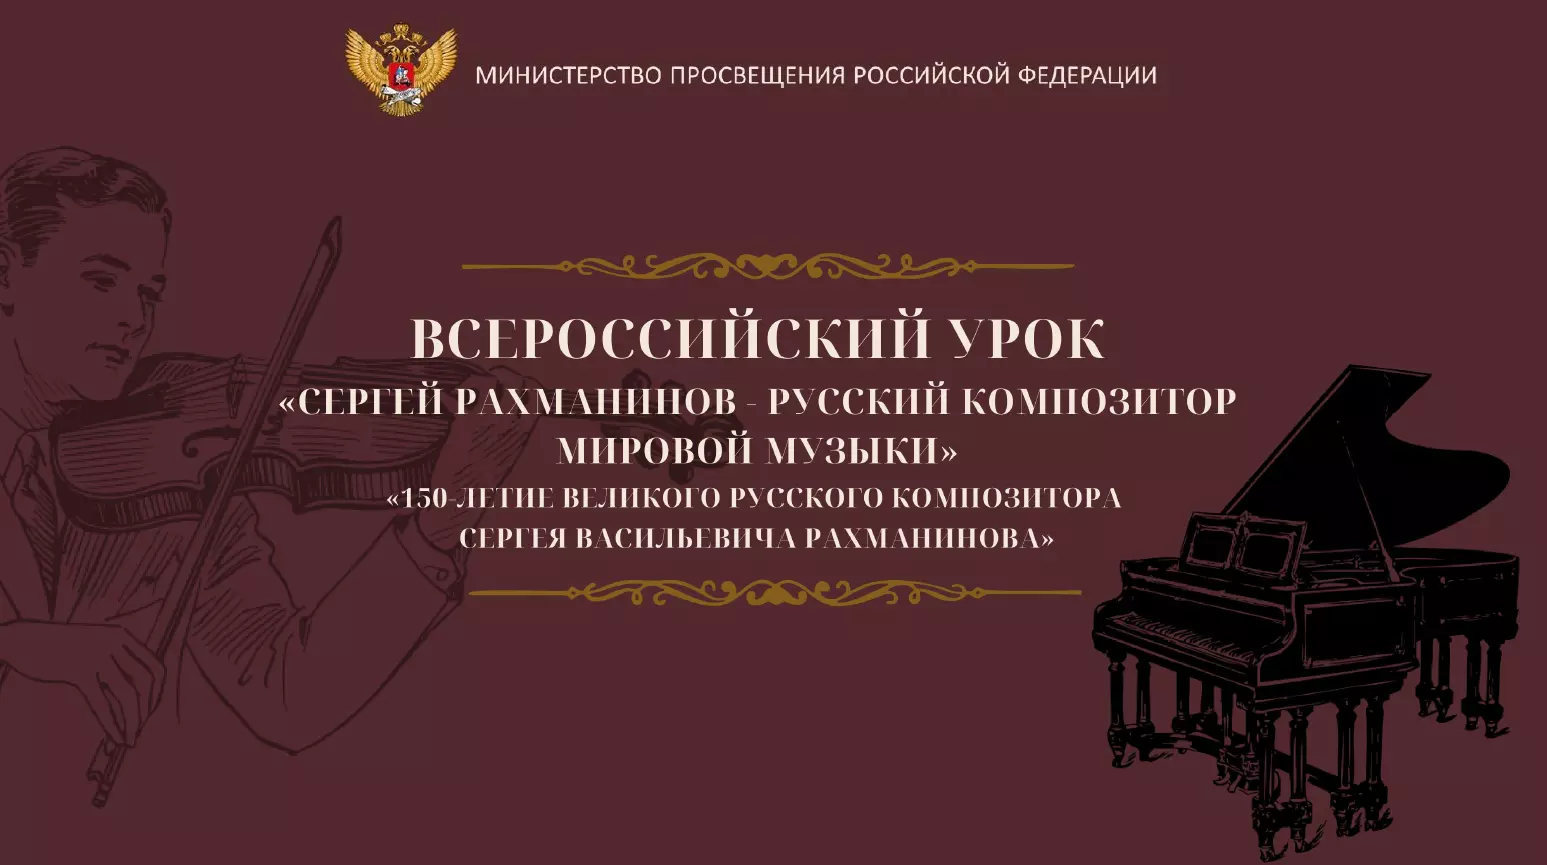 Всероссийский урок музыки, посвященный 150-летию со дня рождения С.В. Рахманинова.